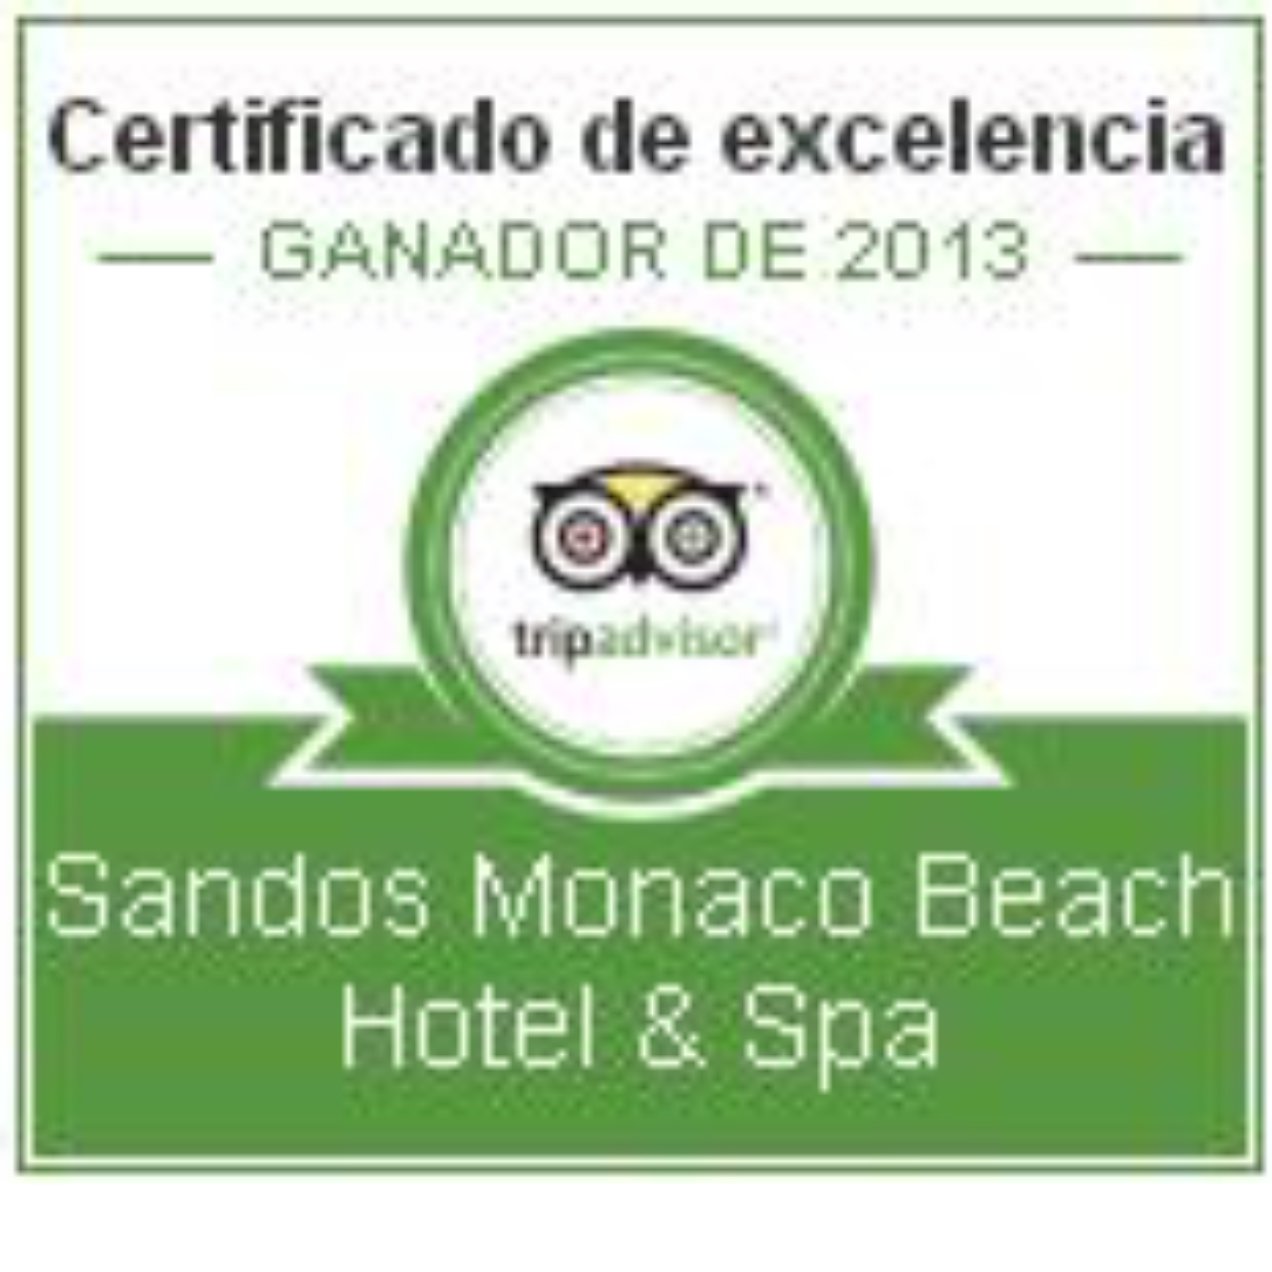 Nuestros Hoteles reciben el Certificado de Excelencia